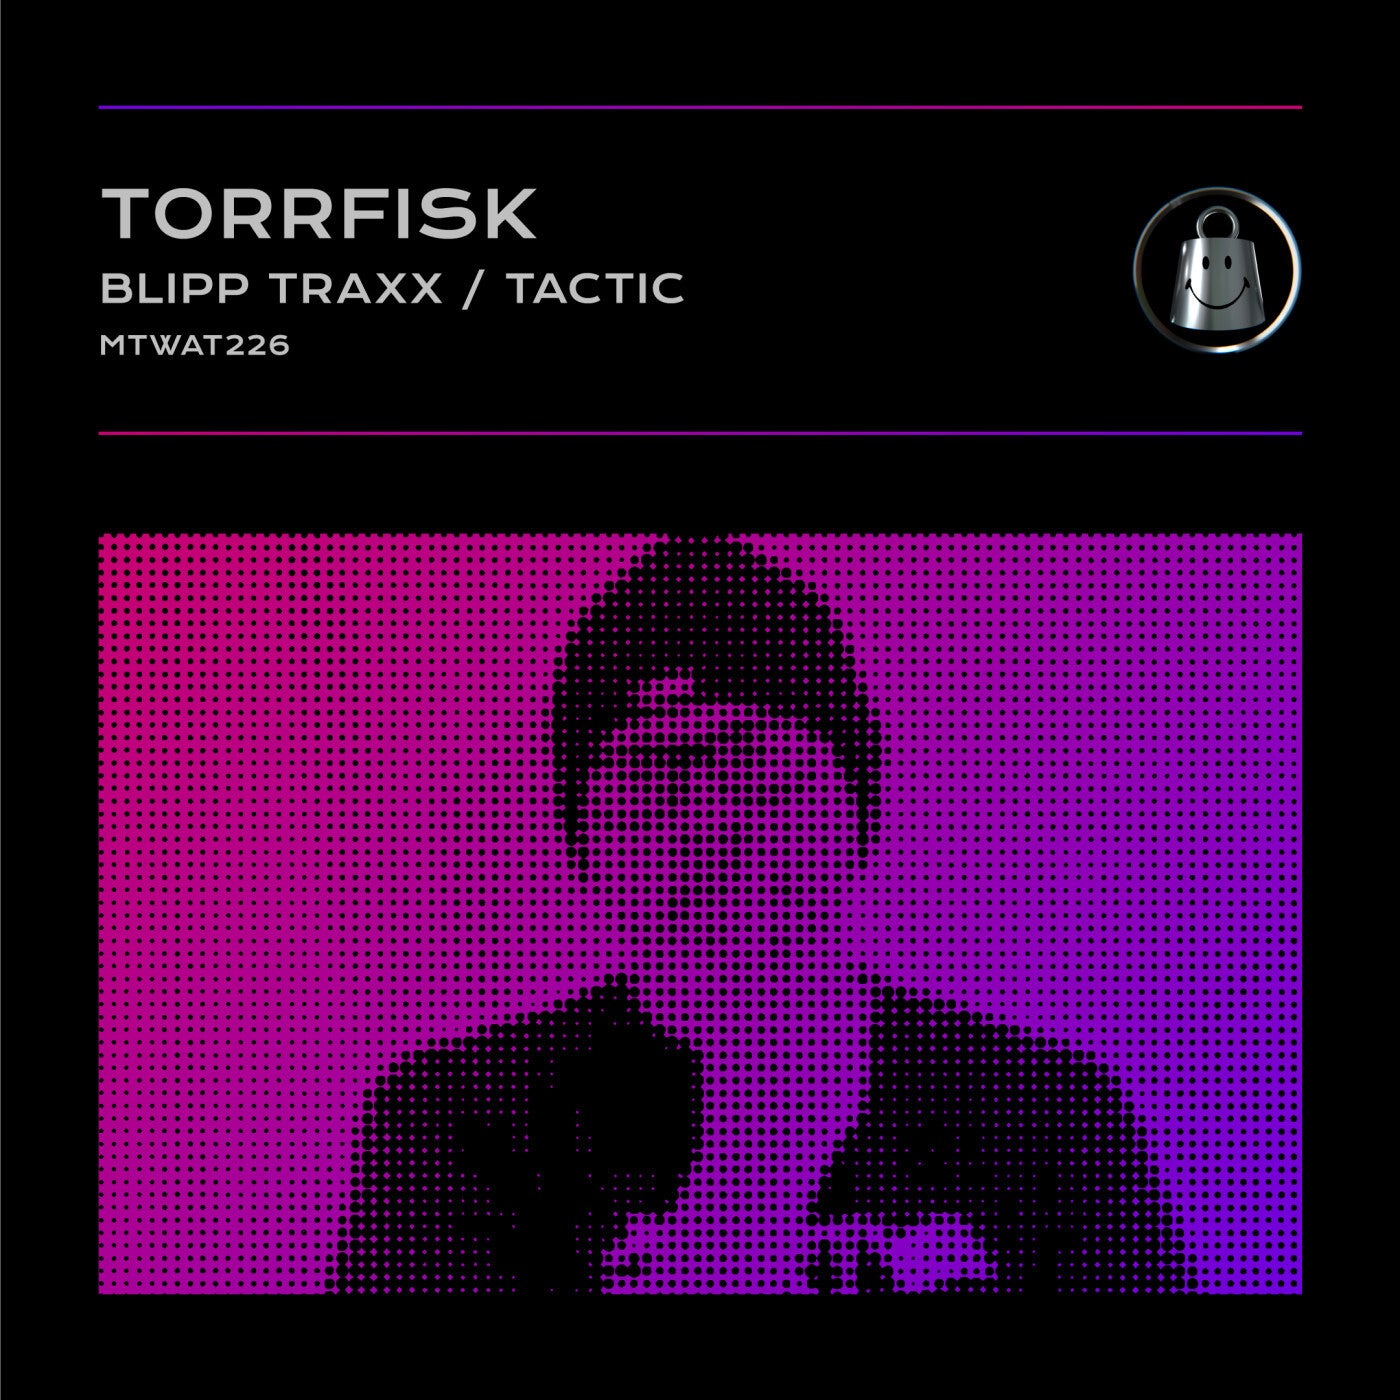 Blipp Traxx / Tactic